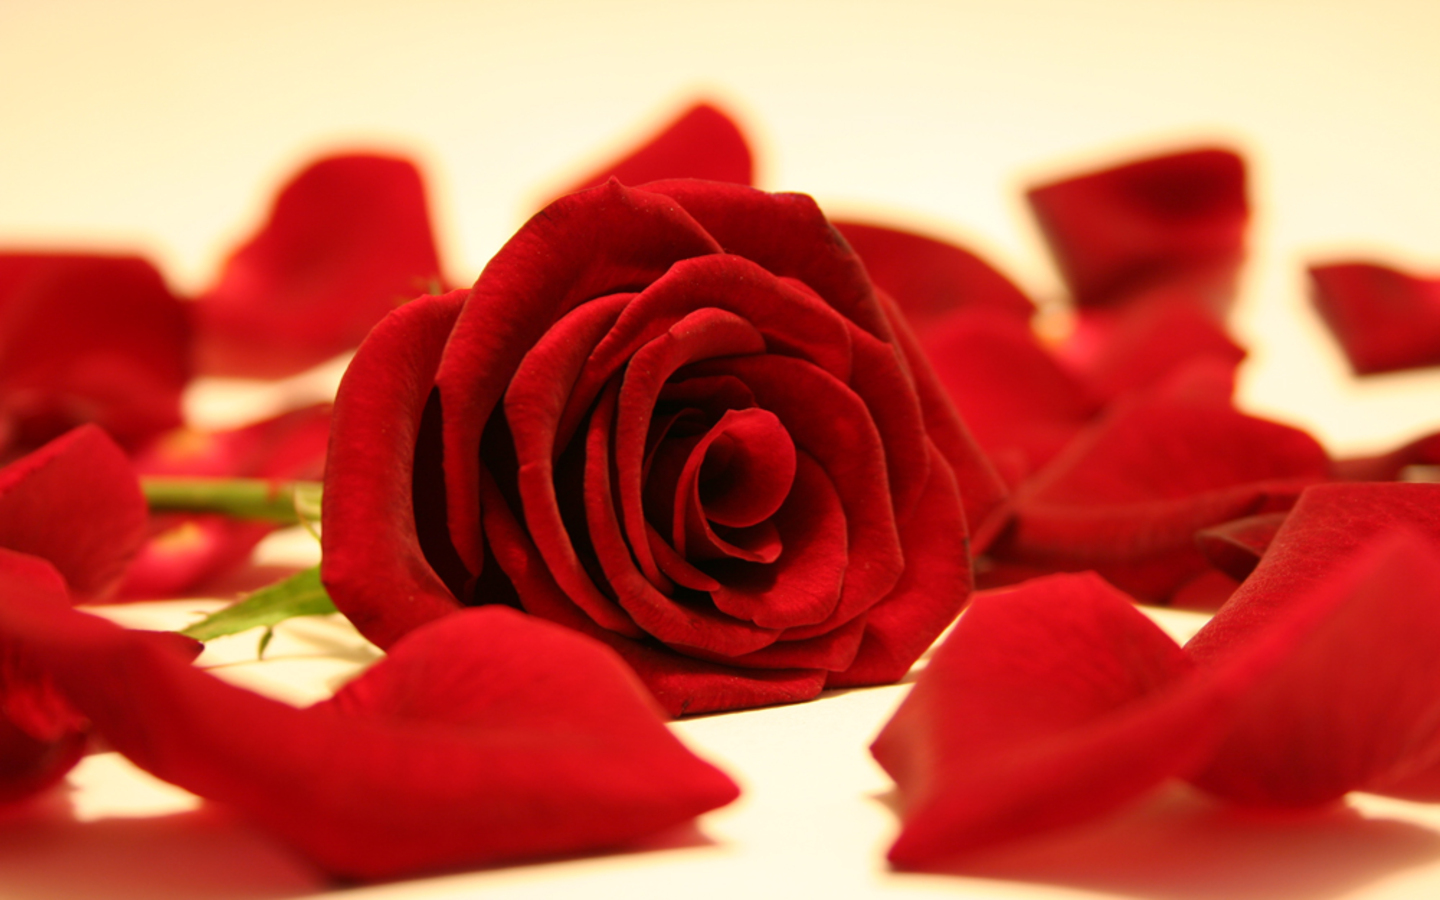 عکس باشکوه گل رز قرمز پر پر شده برای زمینه دسکتاپ